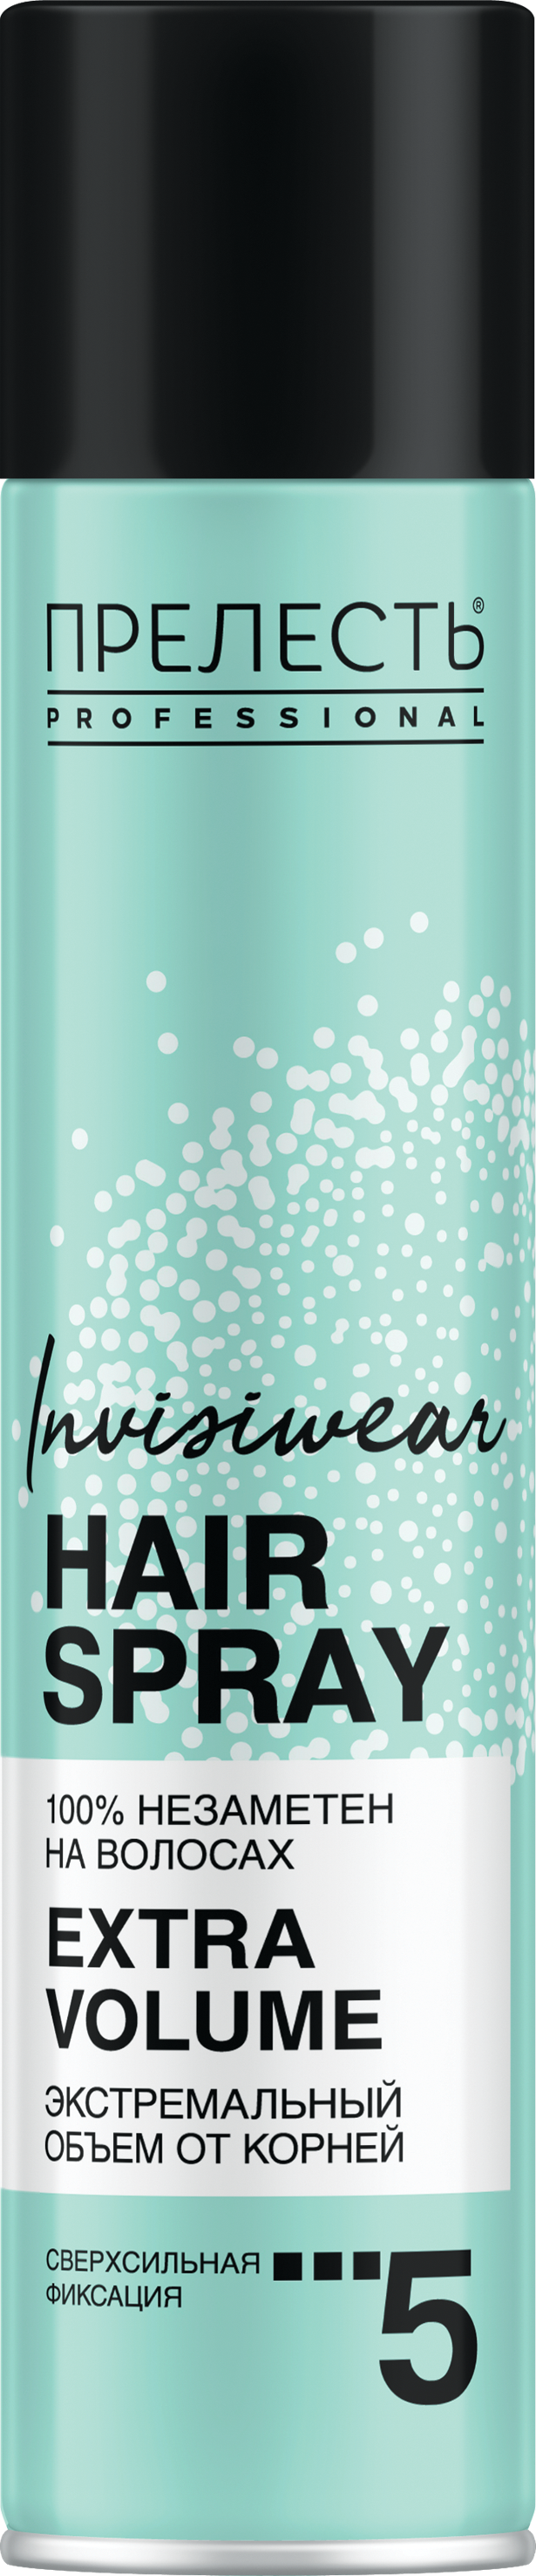 Лак для волос Прелесть Invisiwear Невесомый, экстремальный объем, 300 мл прелесть professional невесомый лак для волос invisiwear 300